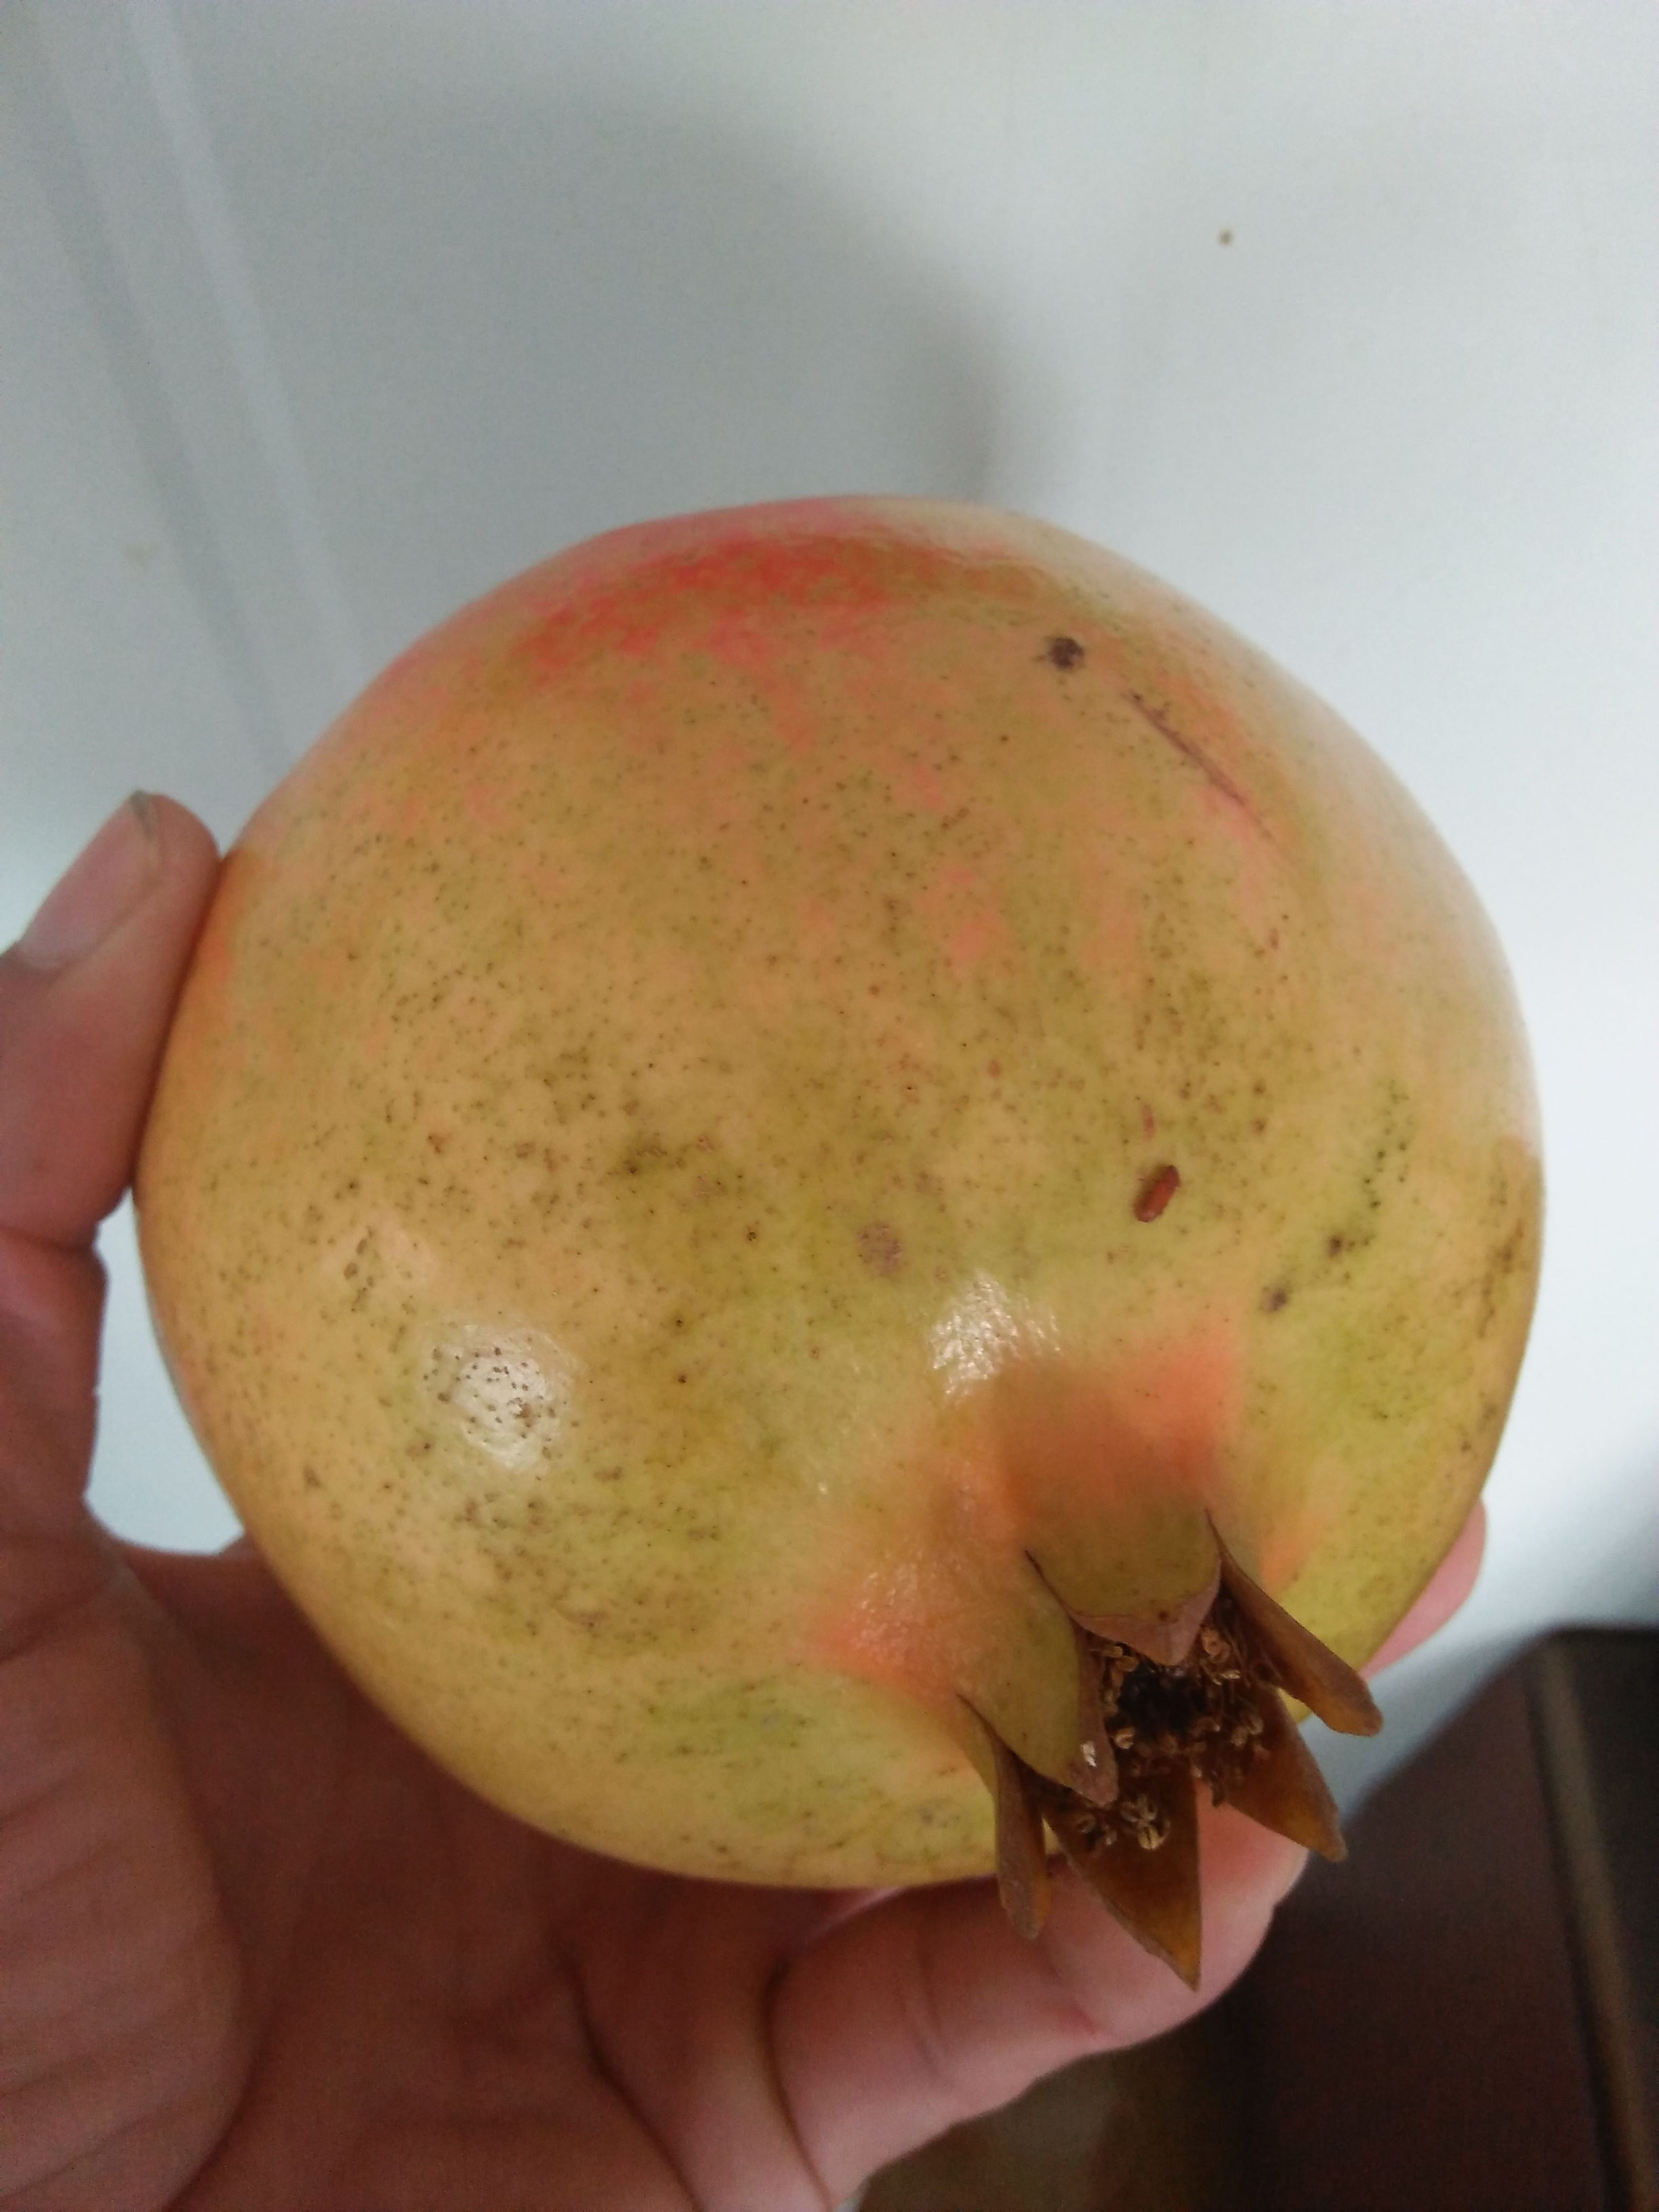 新疆博尔塔拉红富士苹果树苗多少钱